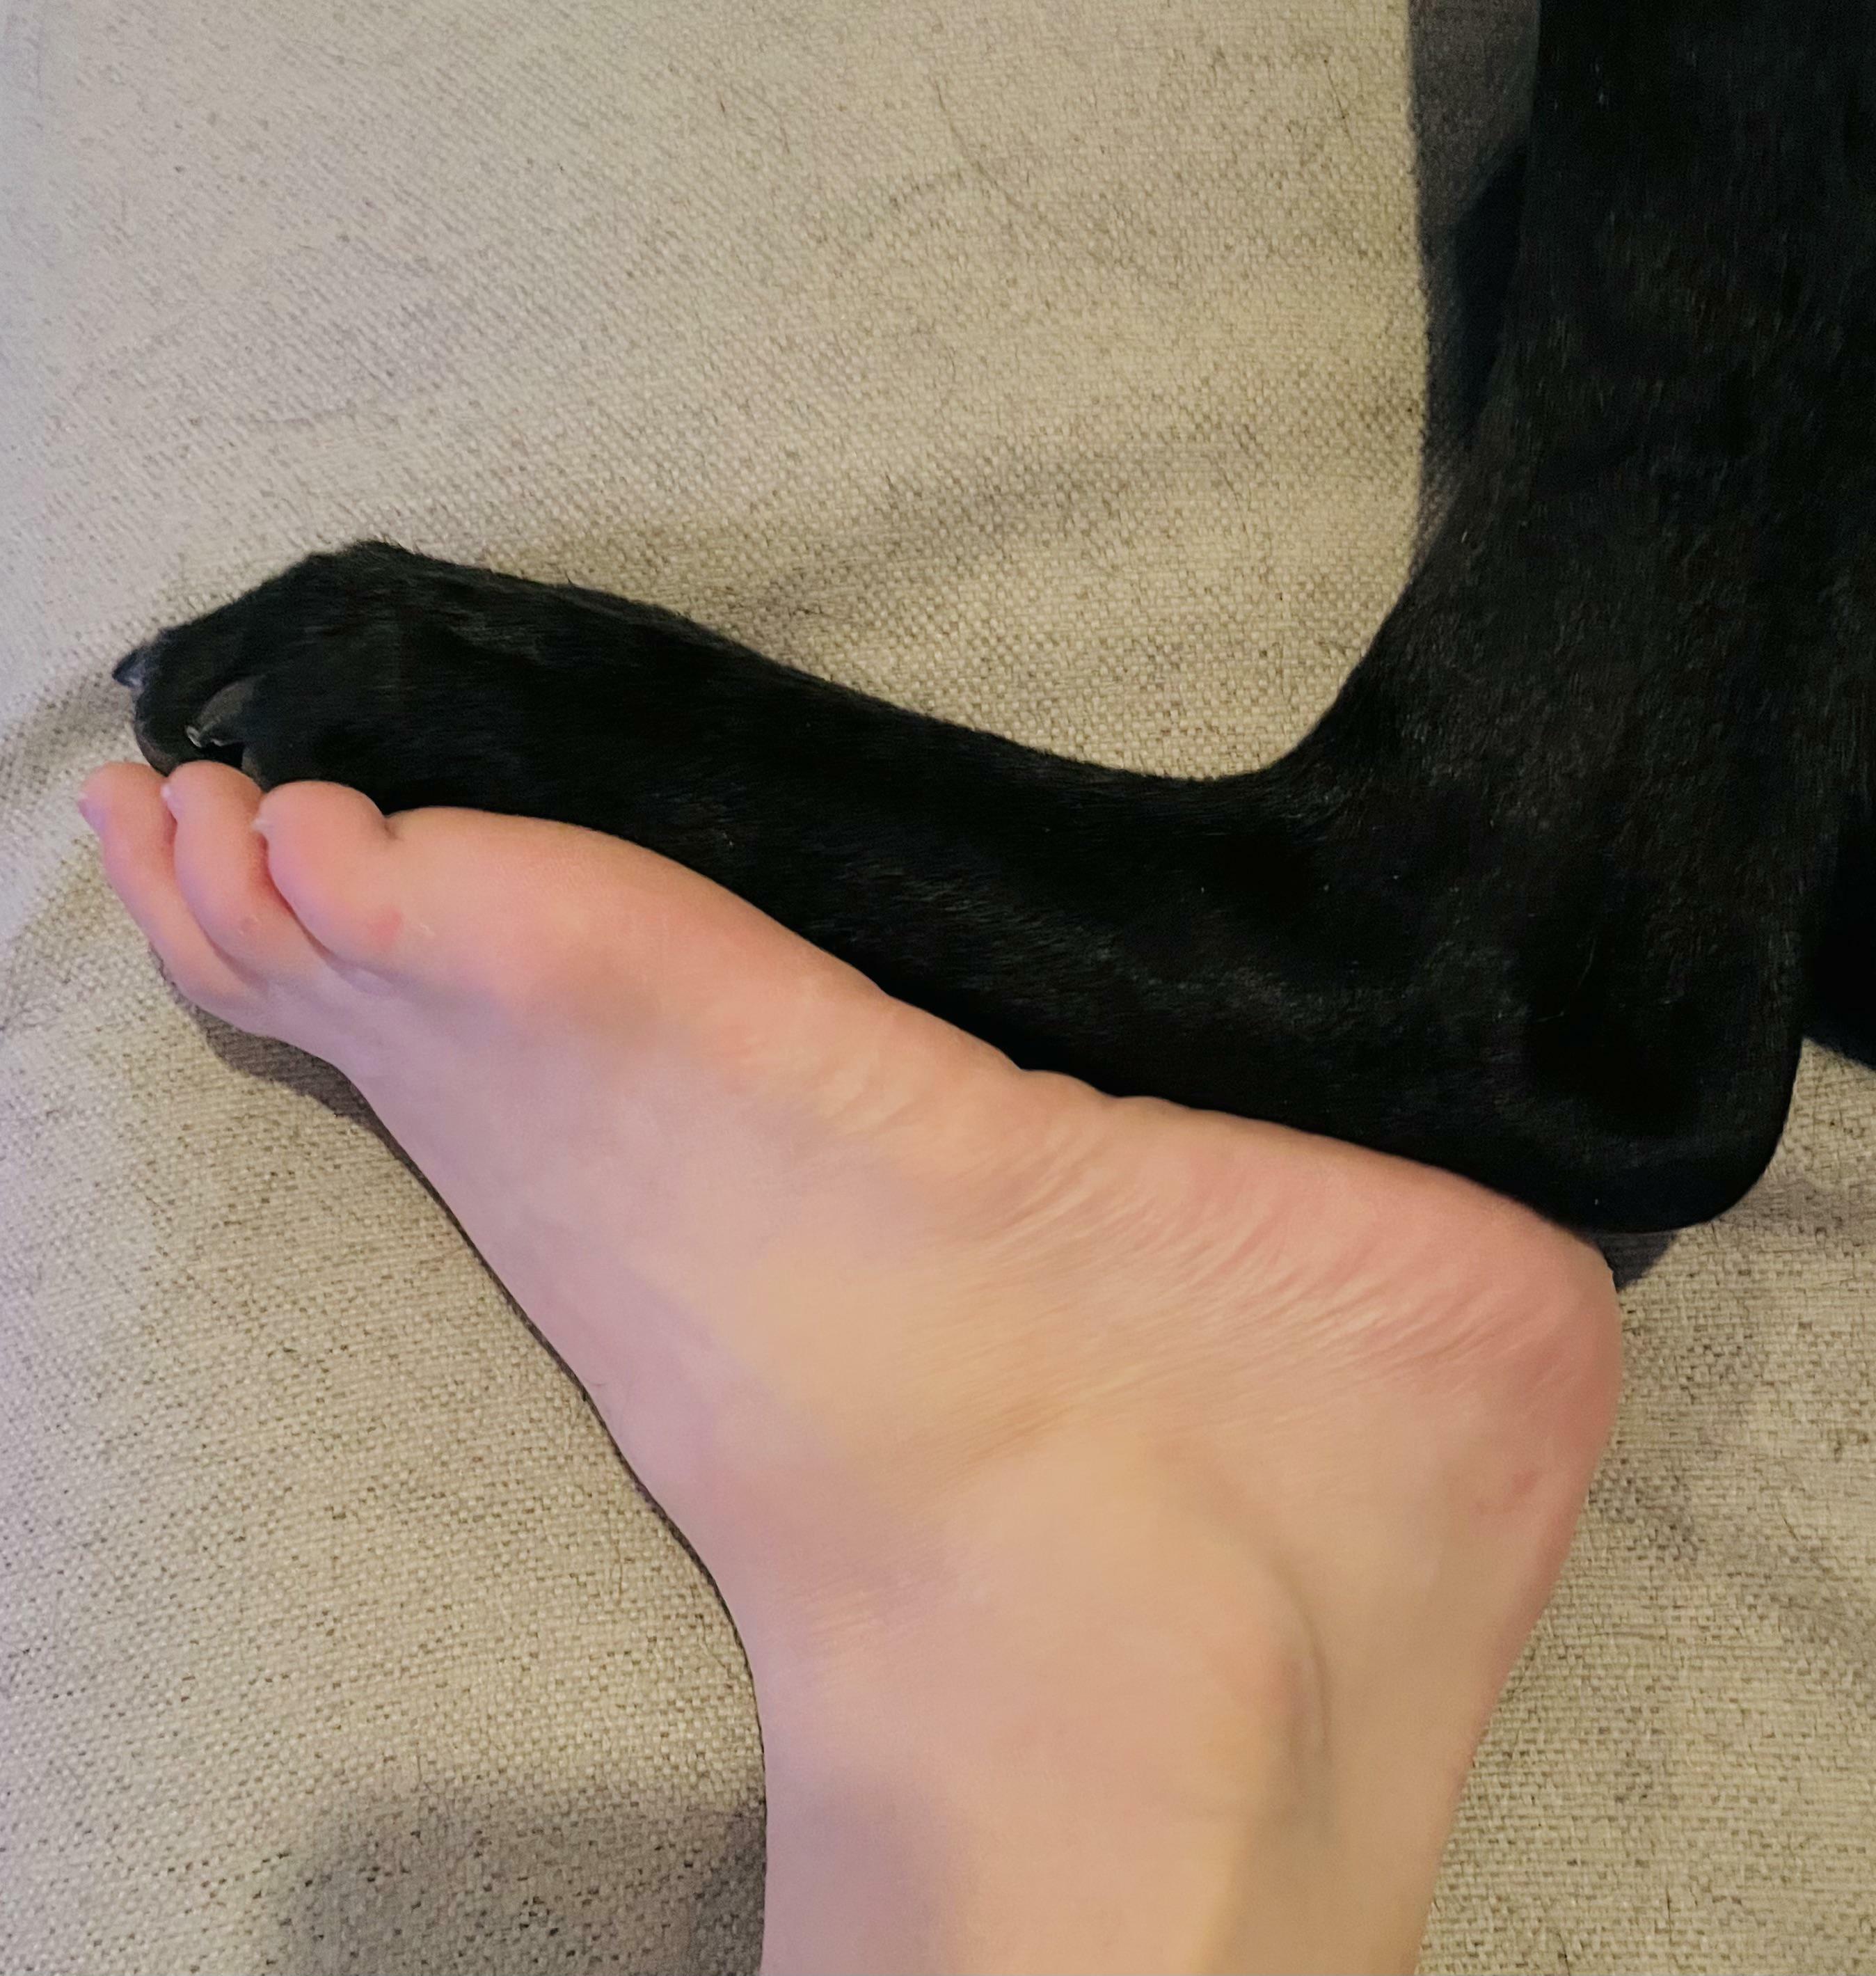 mon chien et moi avons la même taille de pied